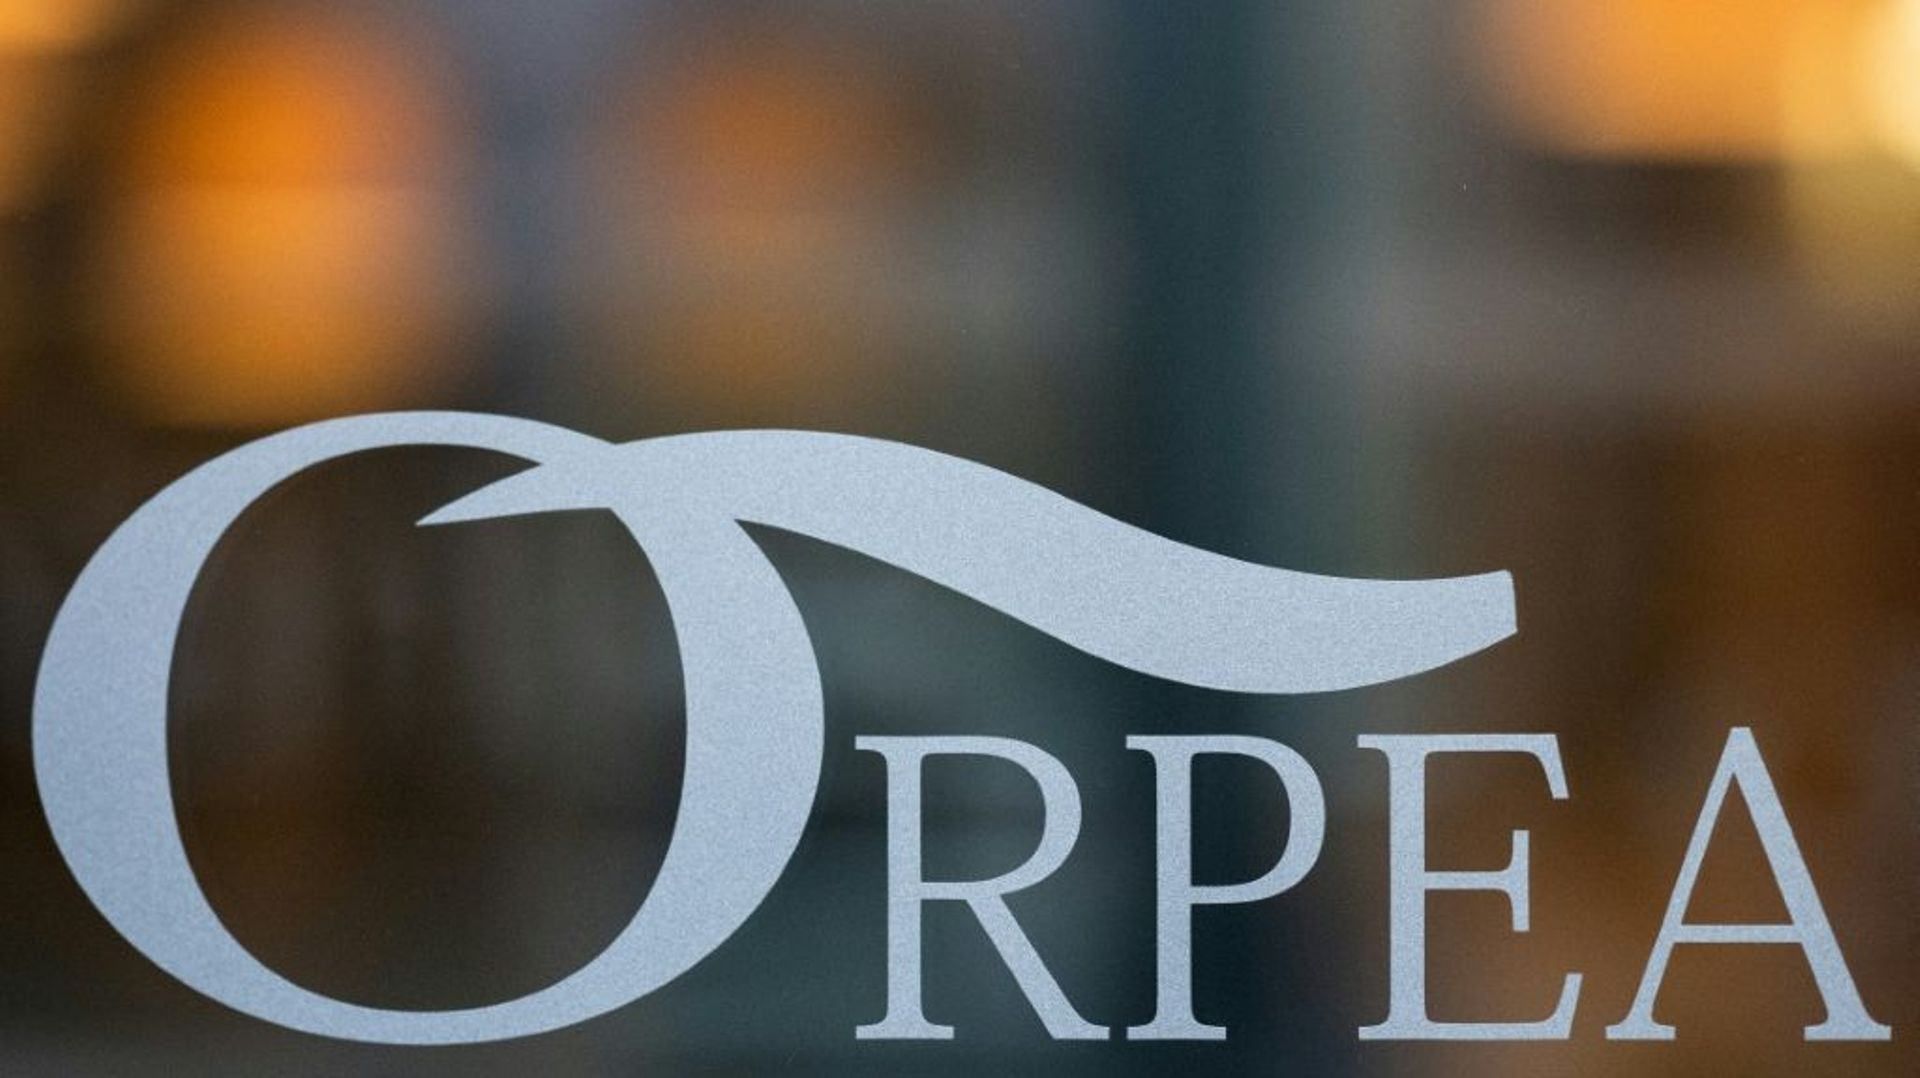 L’Etat dépose plainte contre le groupe d’Ehpad privé Orpea et demandera le remboursement des dotations publiques présumées détournées de leurs fins, a annoncé le gouvernement.